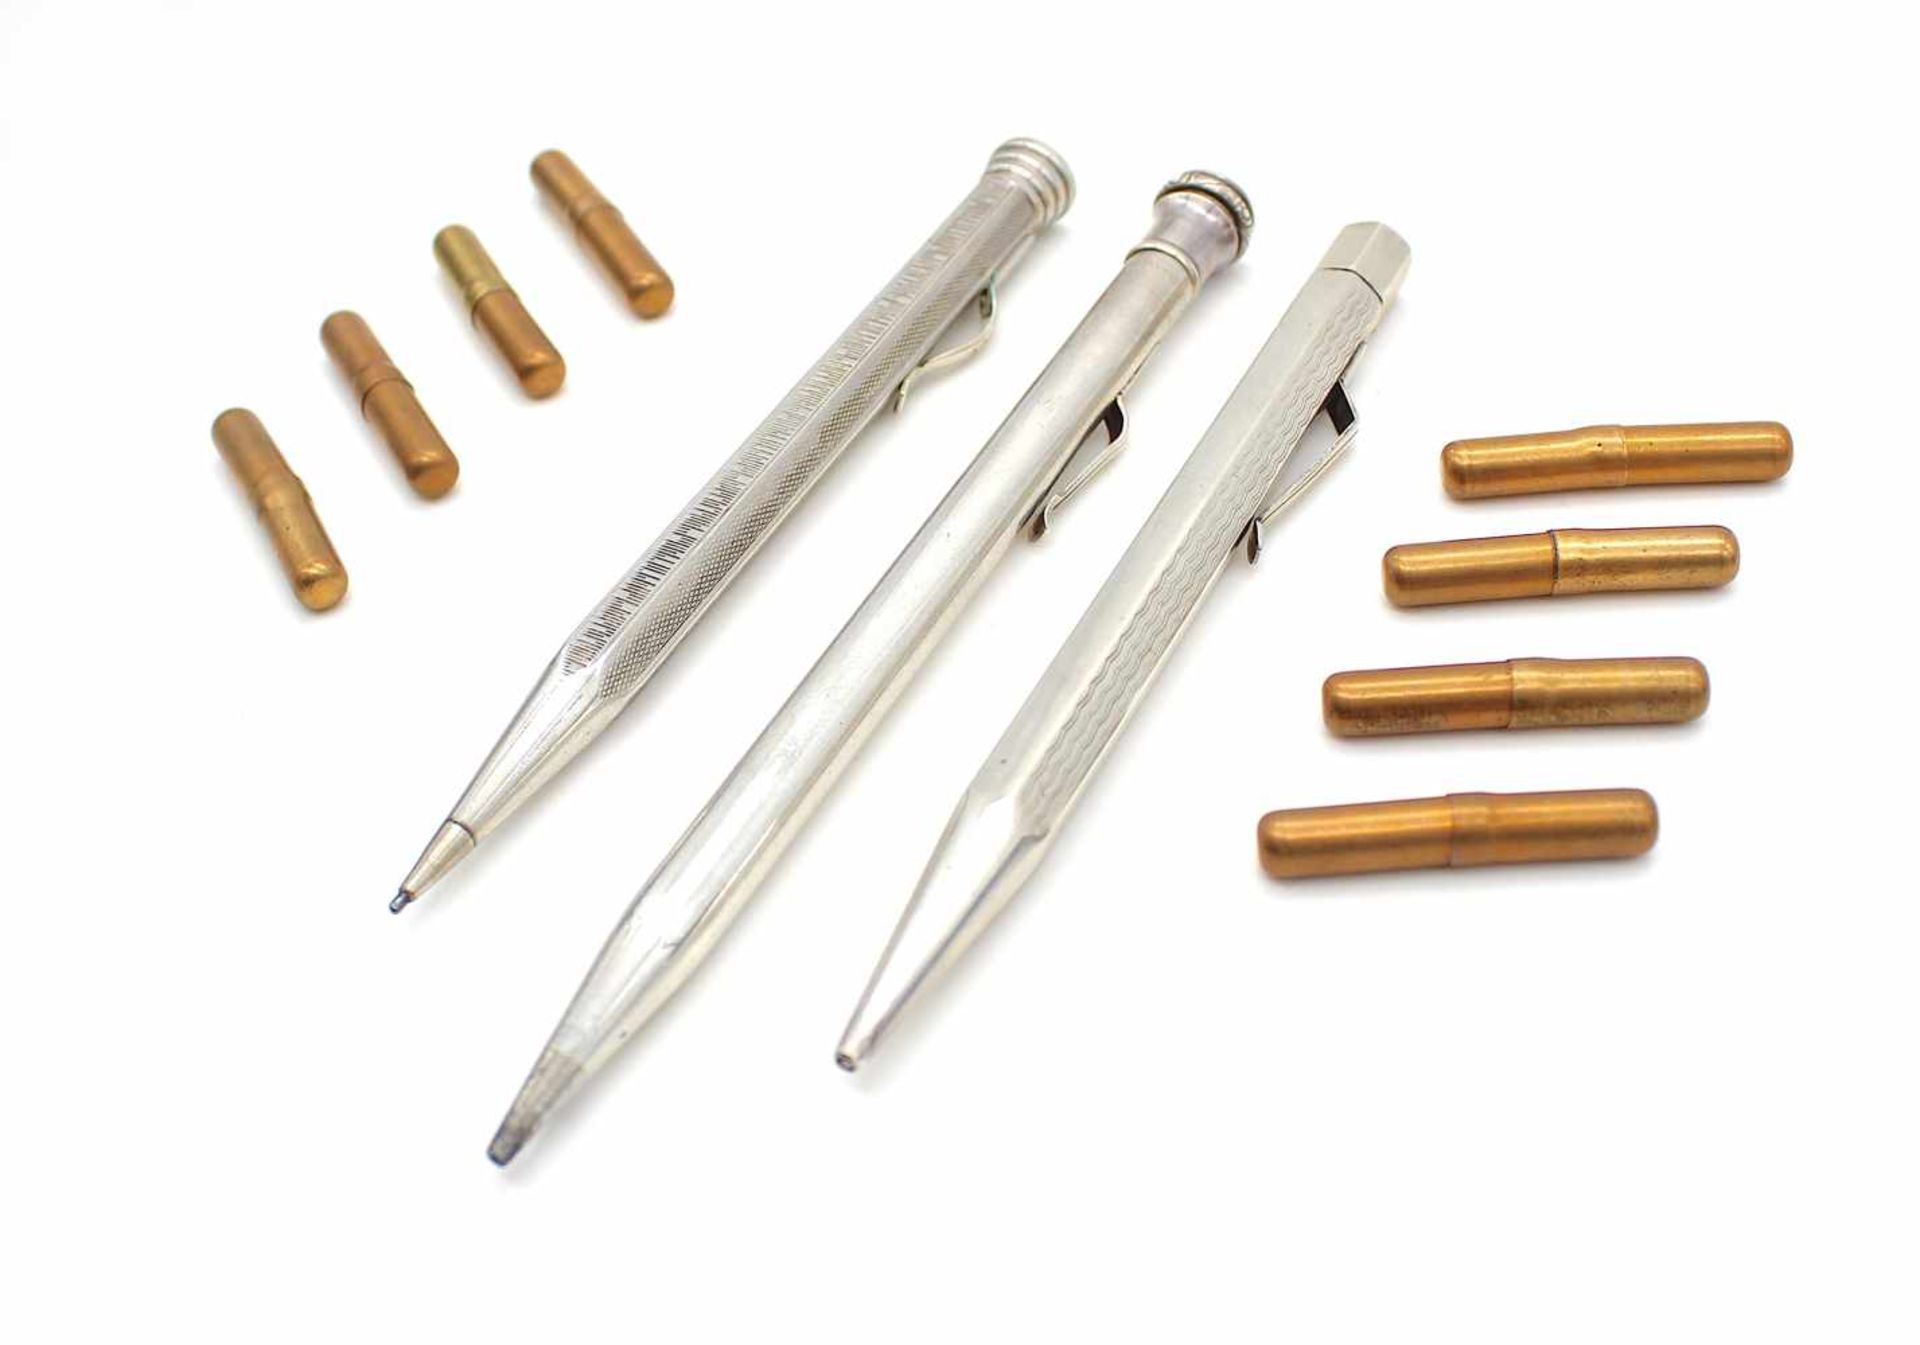 3 Bleistifte aus Silber mit div. Minen , 1 Stift signiert.3 silver pencils with various leads , 1